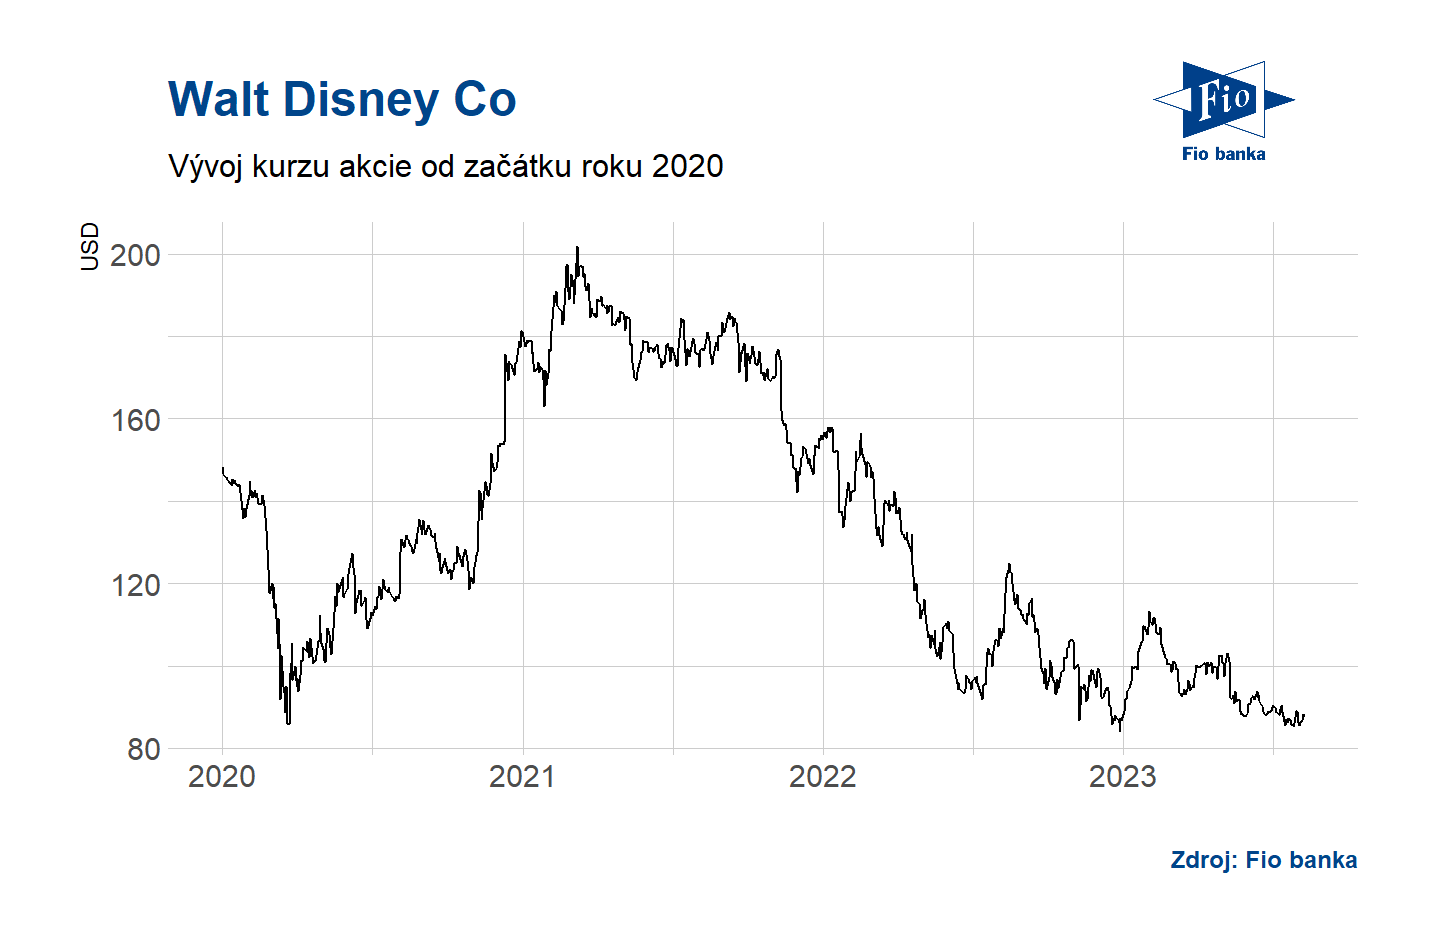 Vývoj akcií Walt Disney